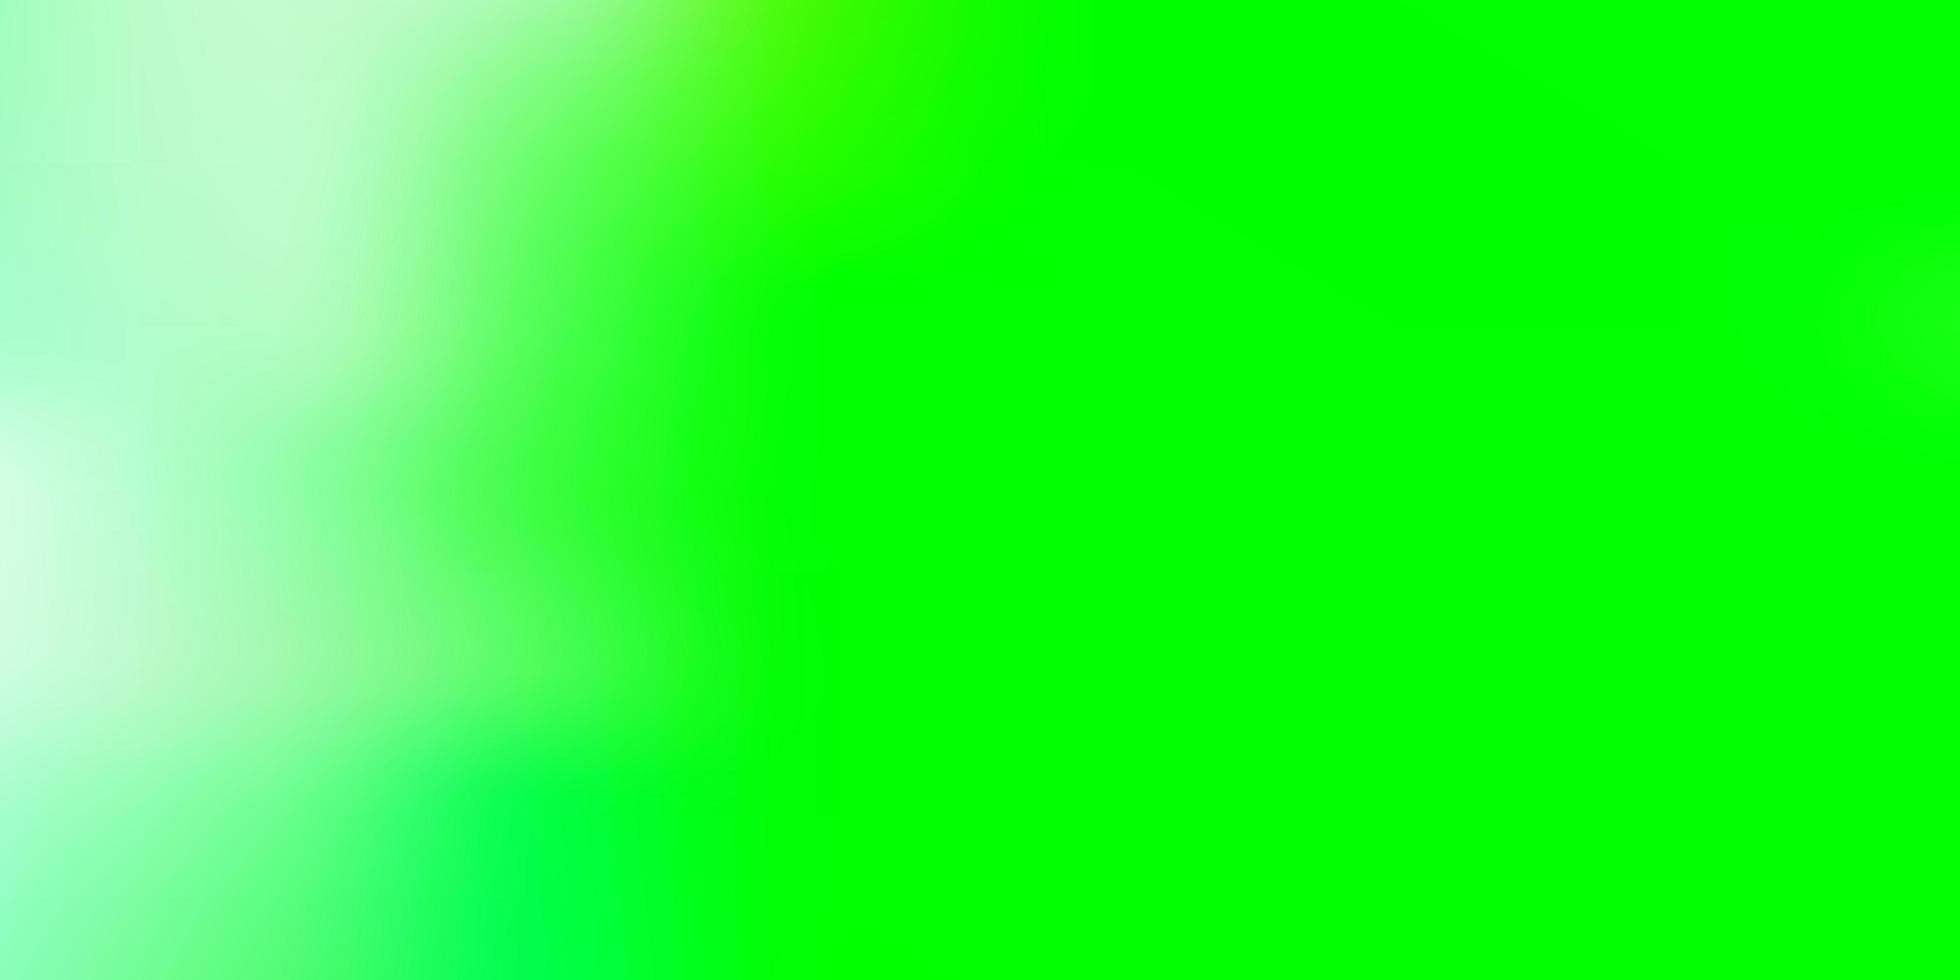 Light green vector abstract blur template.